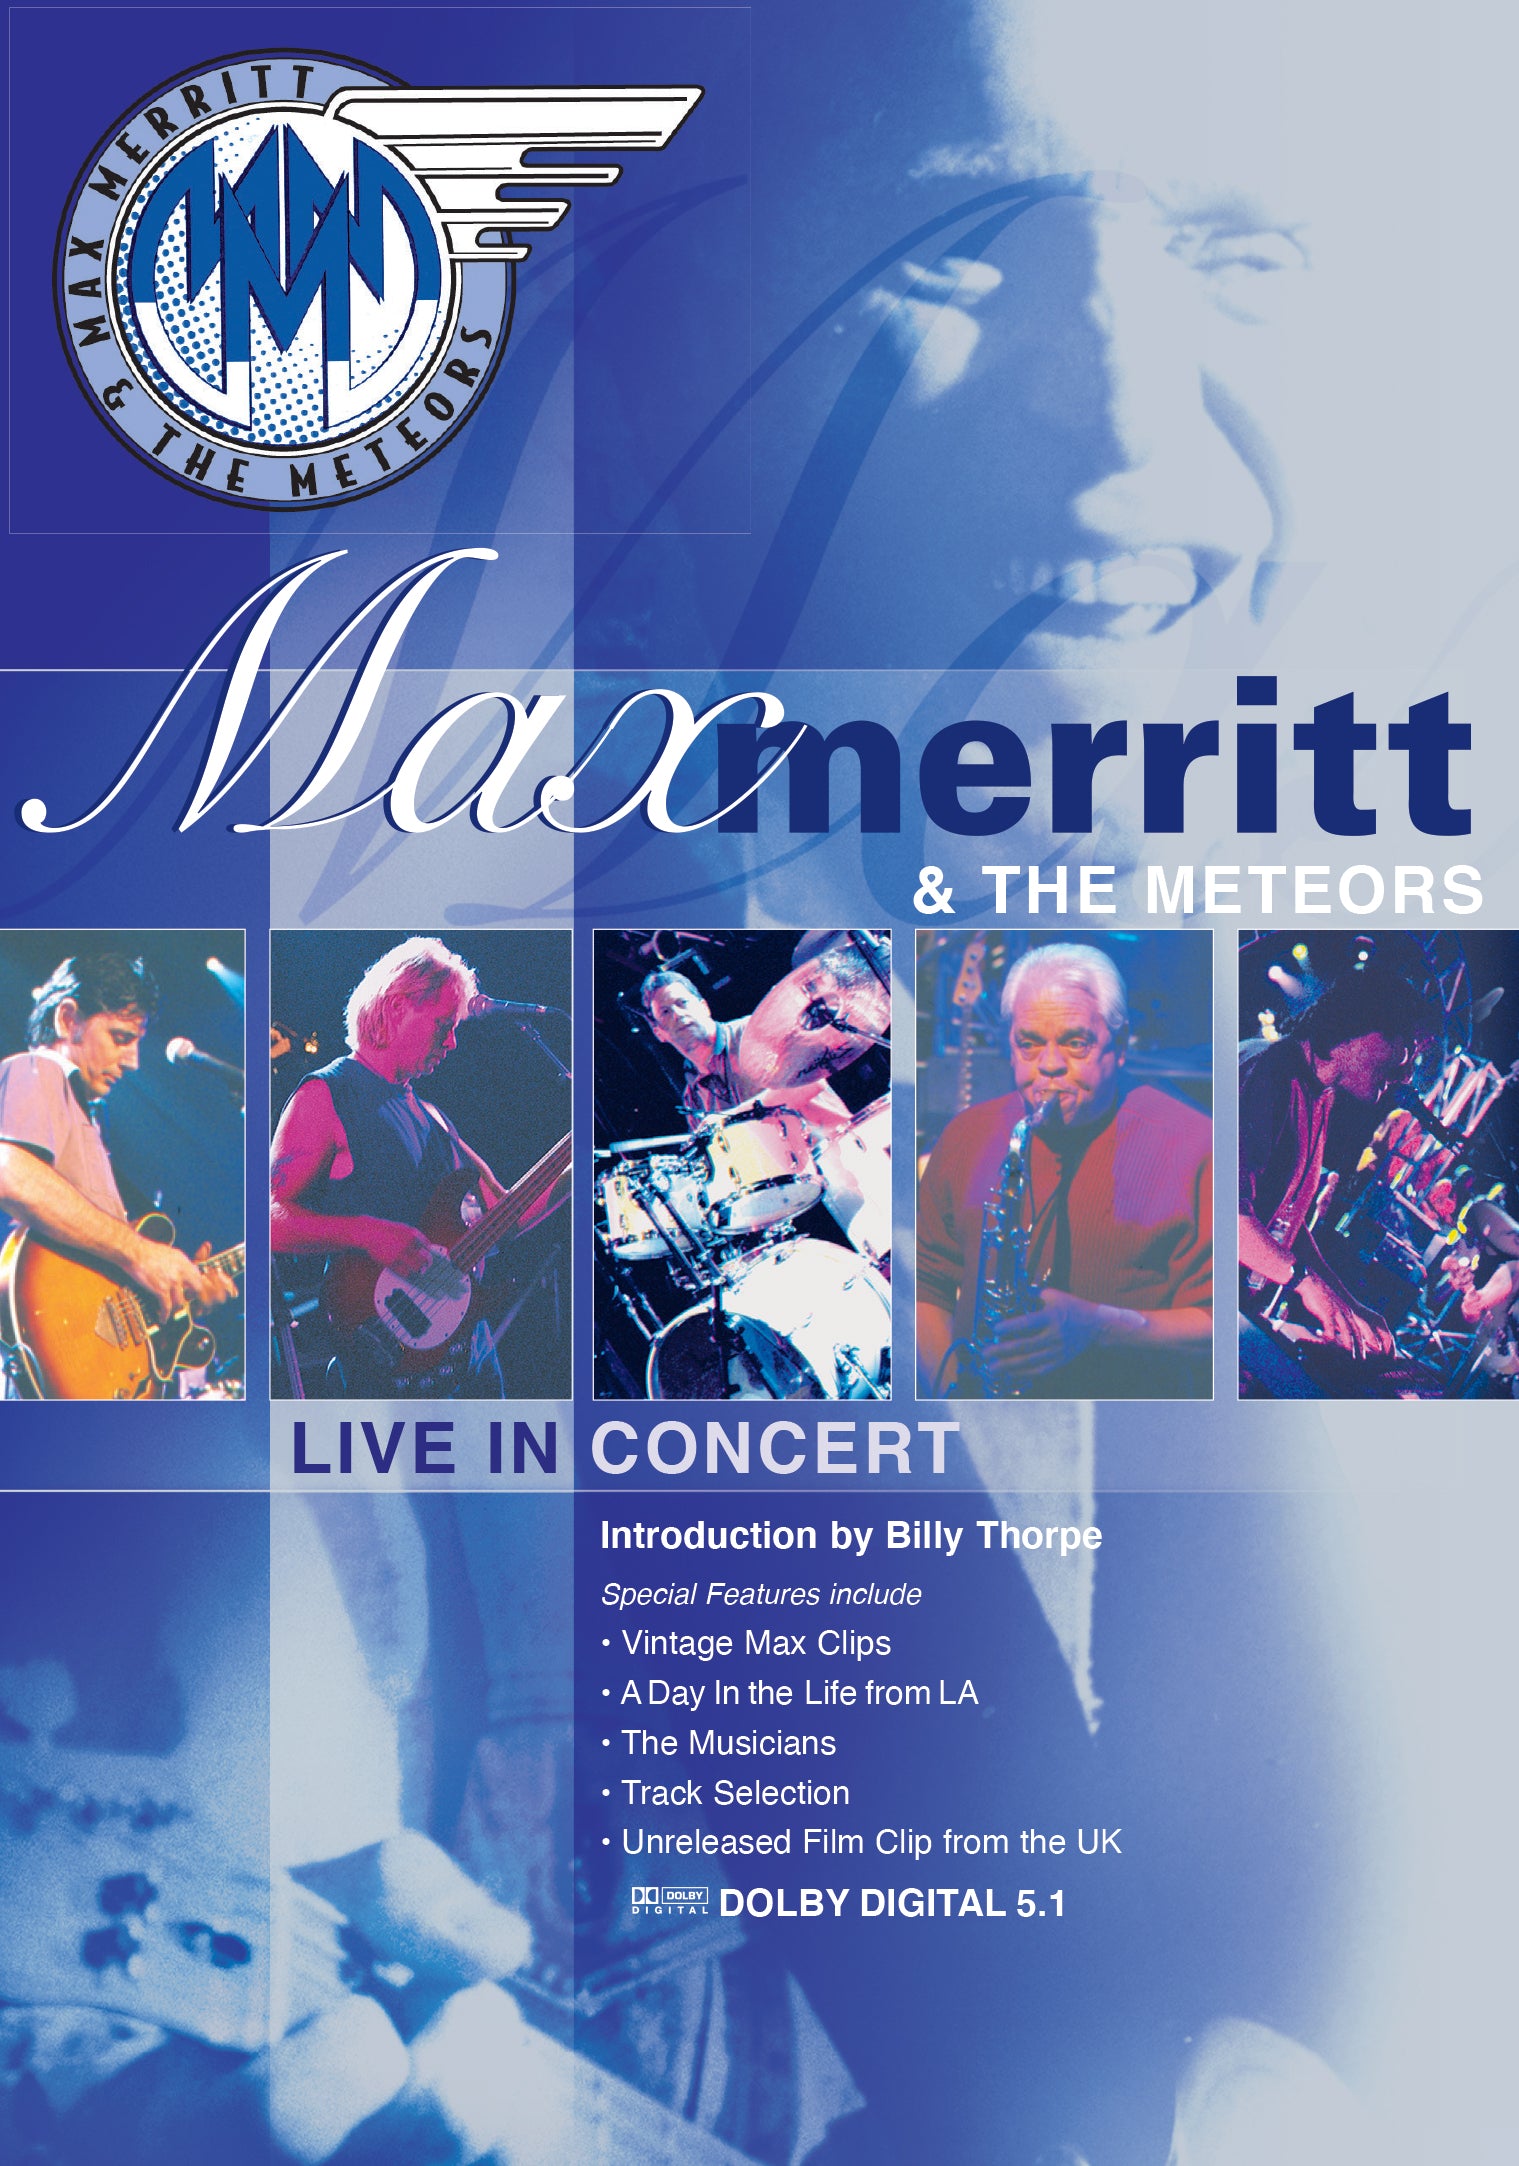 MAX MERRITT & THE METEORS - LIVE IN CONCERT